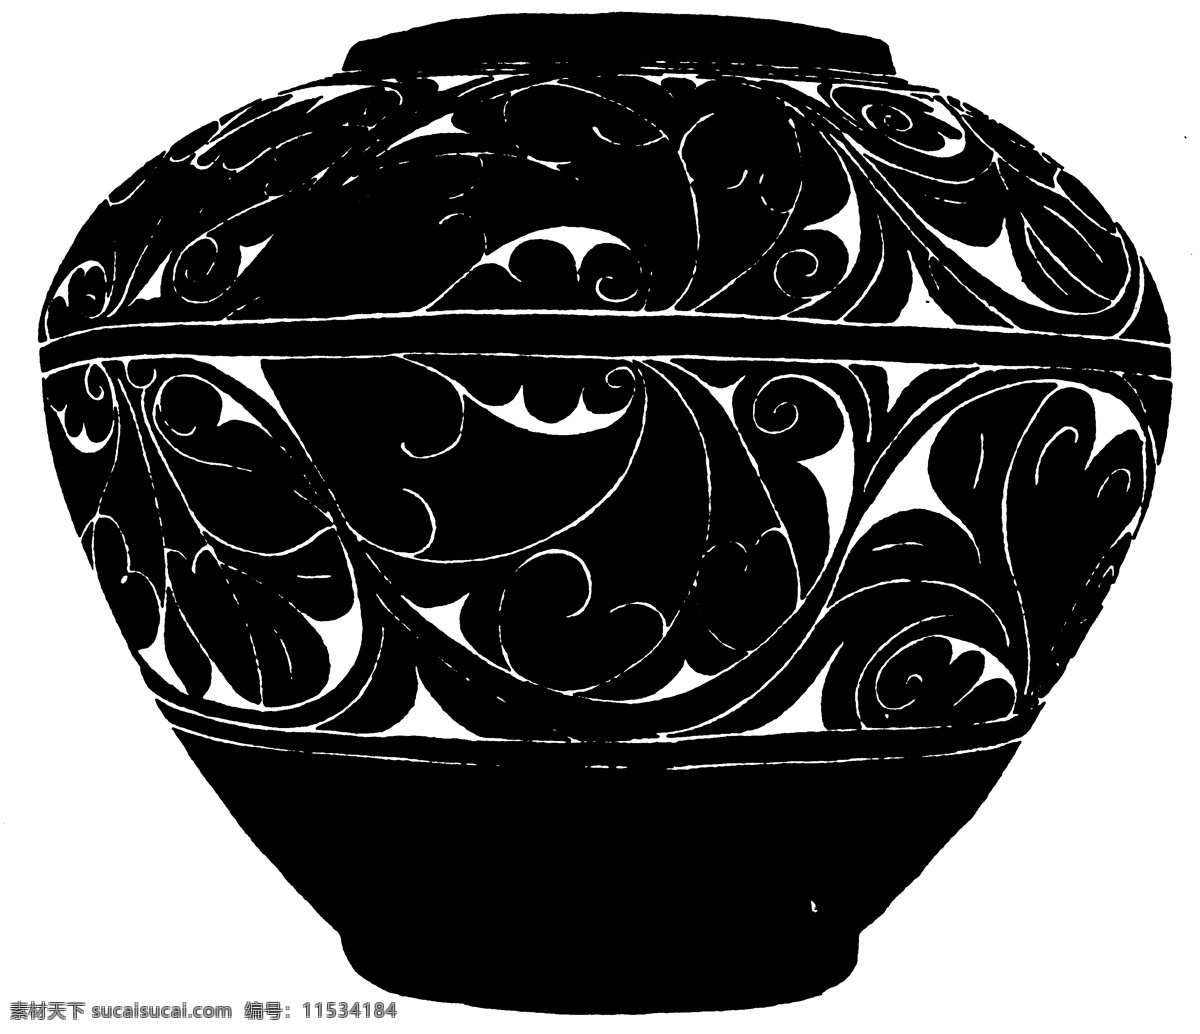 器物图案 两宋时代图案 中国 传统 图案 中国传统图案 设计素材 装饰图案 书画美术 黑色